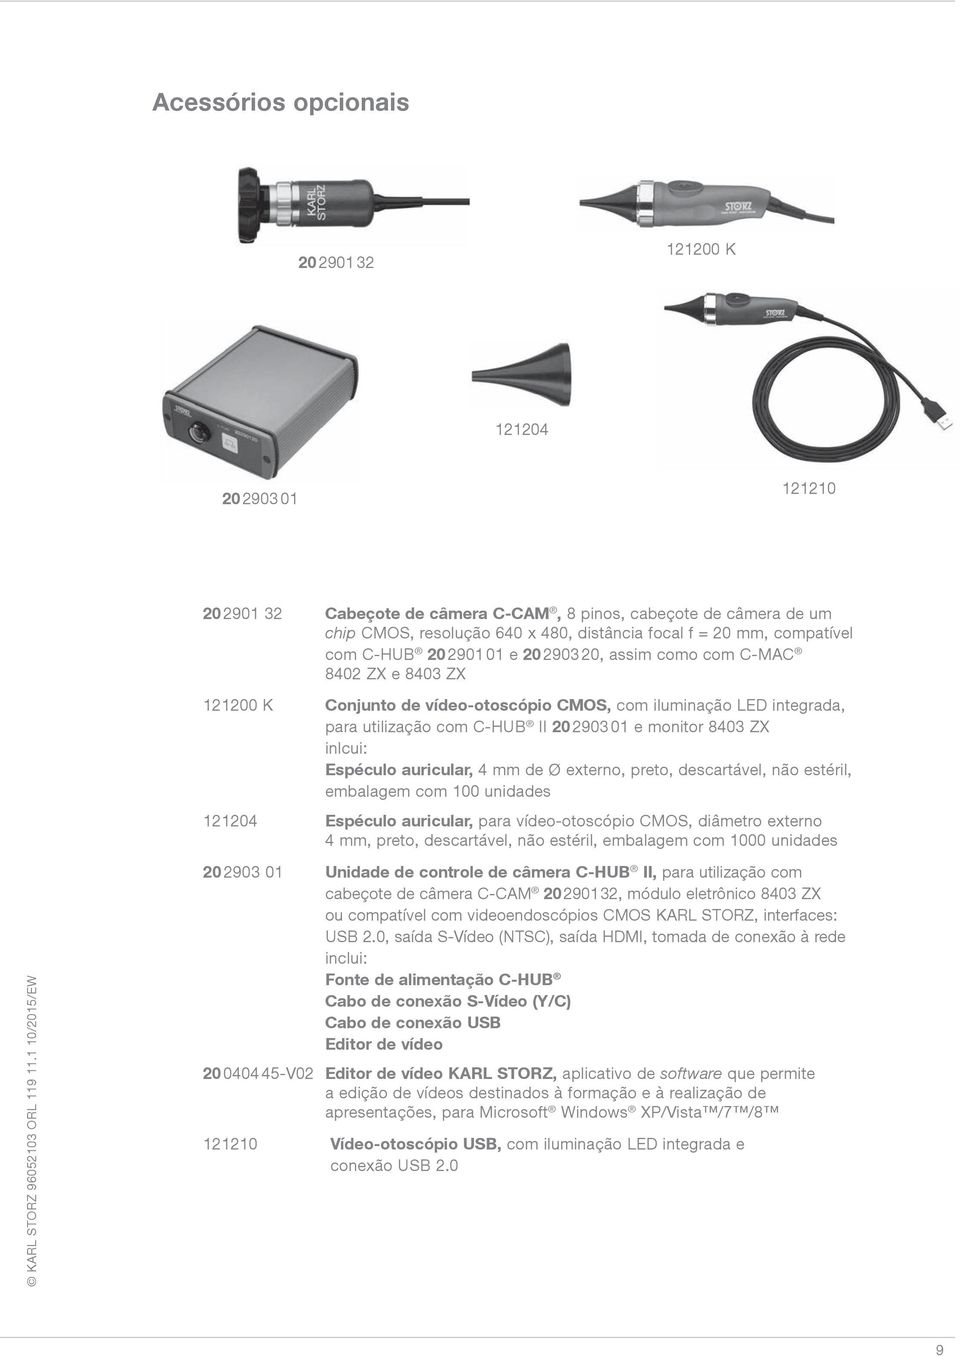 monitor 8403 ZX inlcui: Espéculo auricular, 4 mm de Ø externo, preto, descartável, não estéril, embalagem com 100 unidades 121204 Espéculo auricular, para vídeo-otoscópio CMOS, diâmetro externo 4 mm,